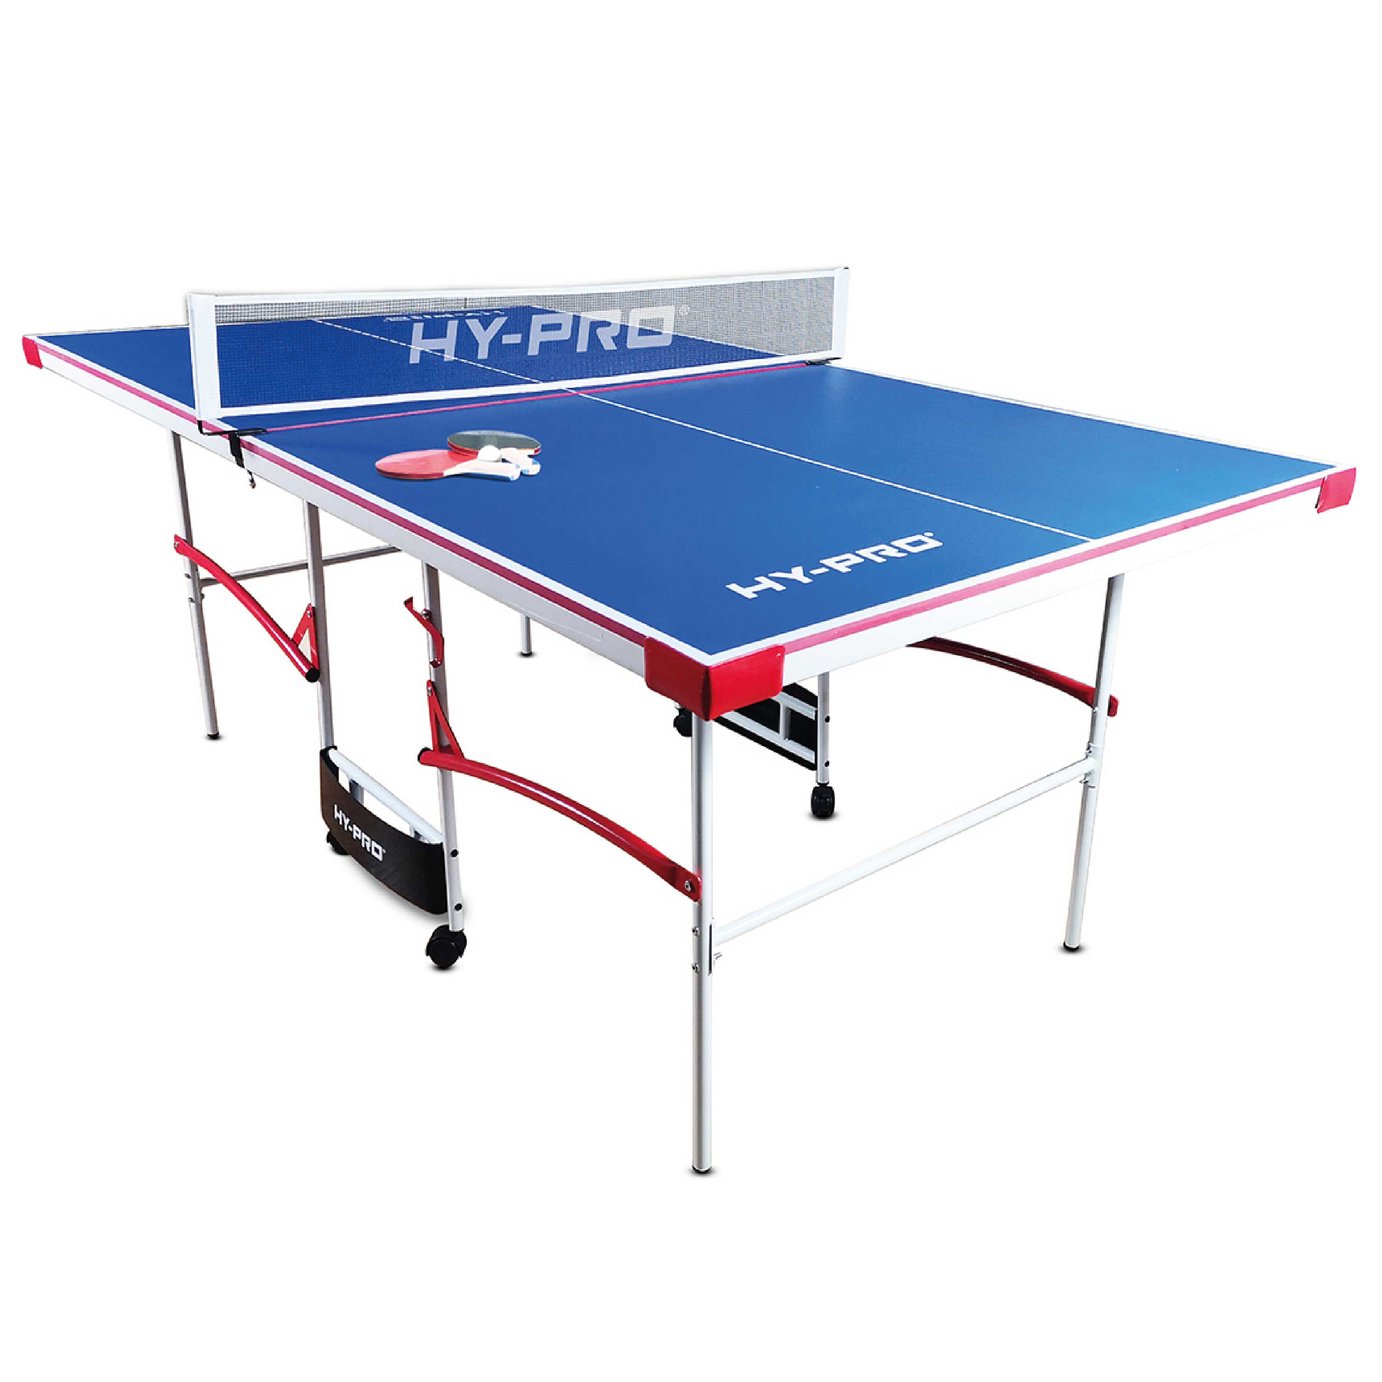 Buy Hy-Pro 7ft Indoor Table Tennis